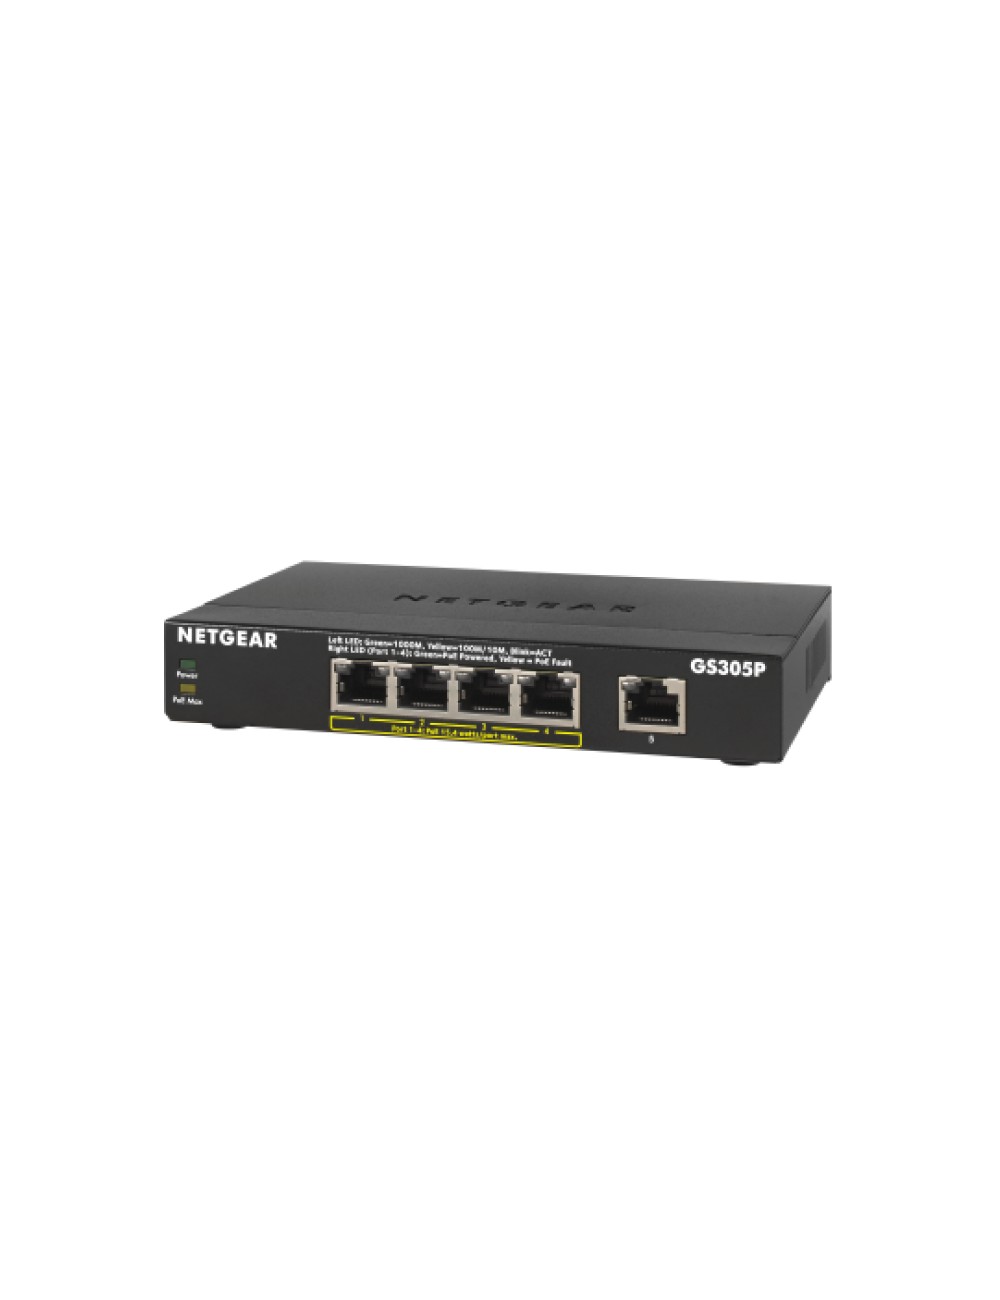 netgear-switch-desktop-gigabit-4-port-10-100-1000-gs305p-200pes-1.jpg